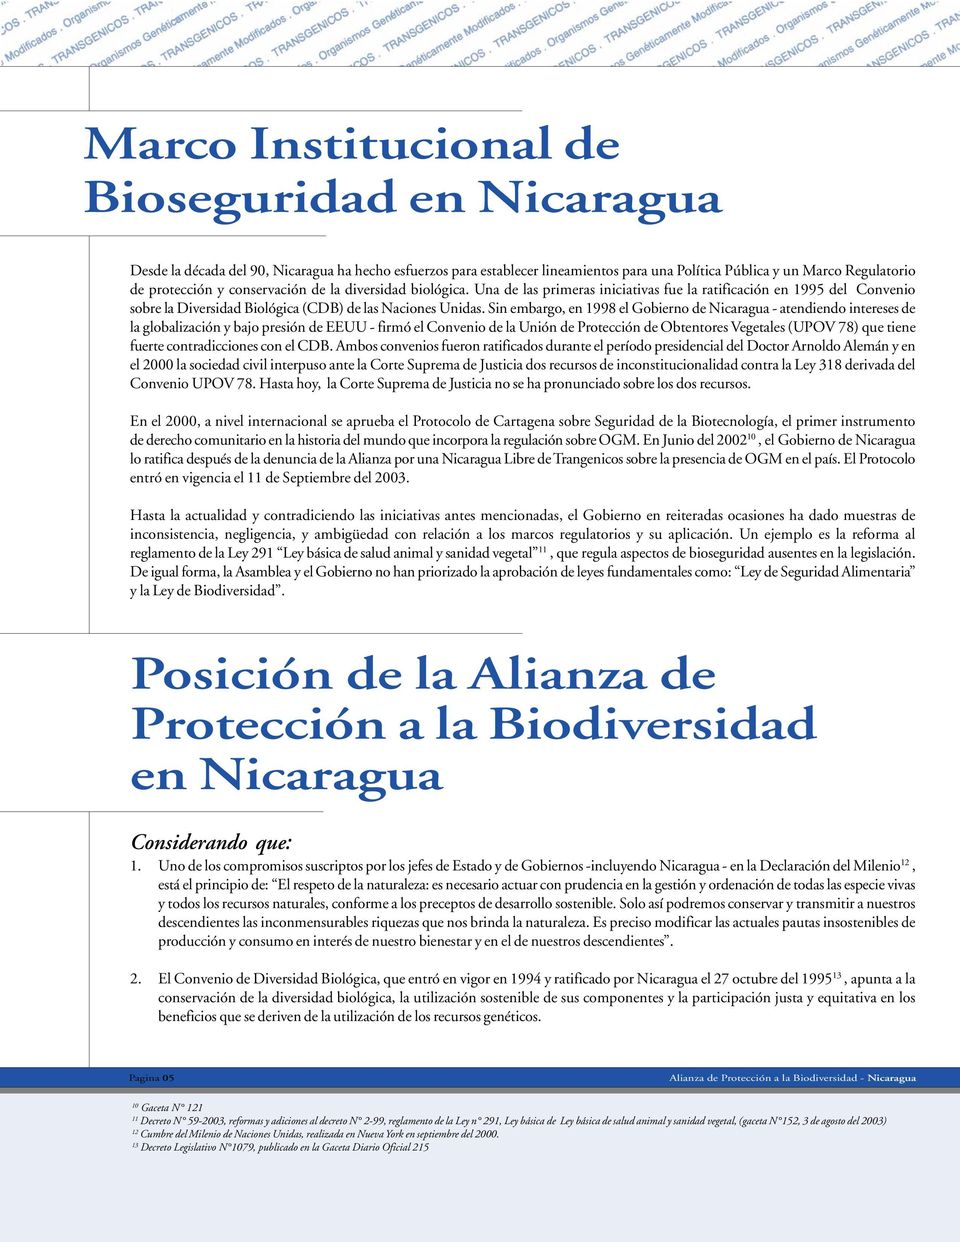 Sin embargo, en 1998 el Gobierno de Nicaragua - atendiendo intereses de la globalización y bajo presión de EEUU - firmó el Convenio de la Unión de Protección de Obtentores Vegetales (UPOV 78) que